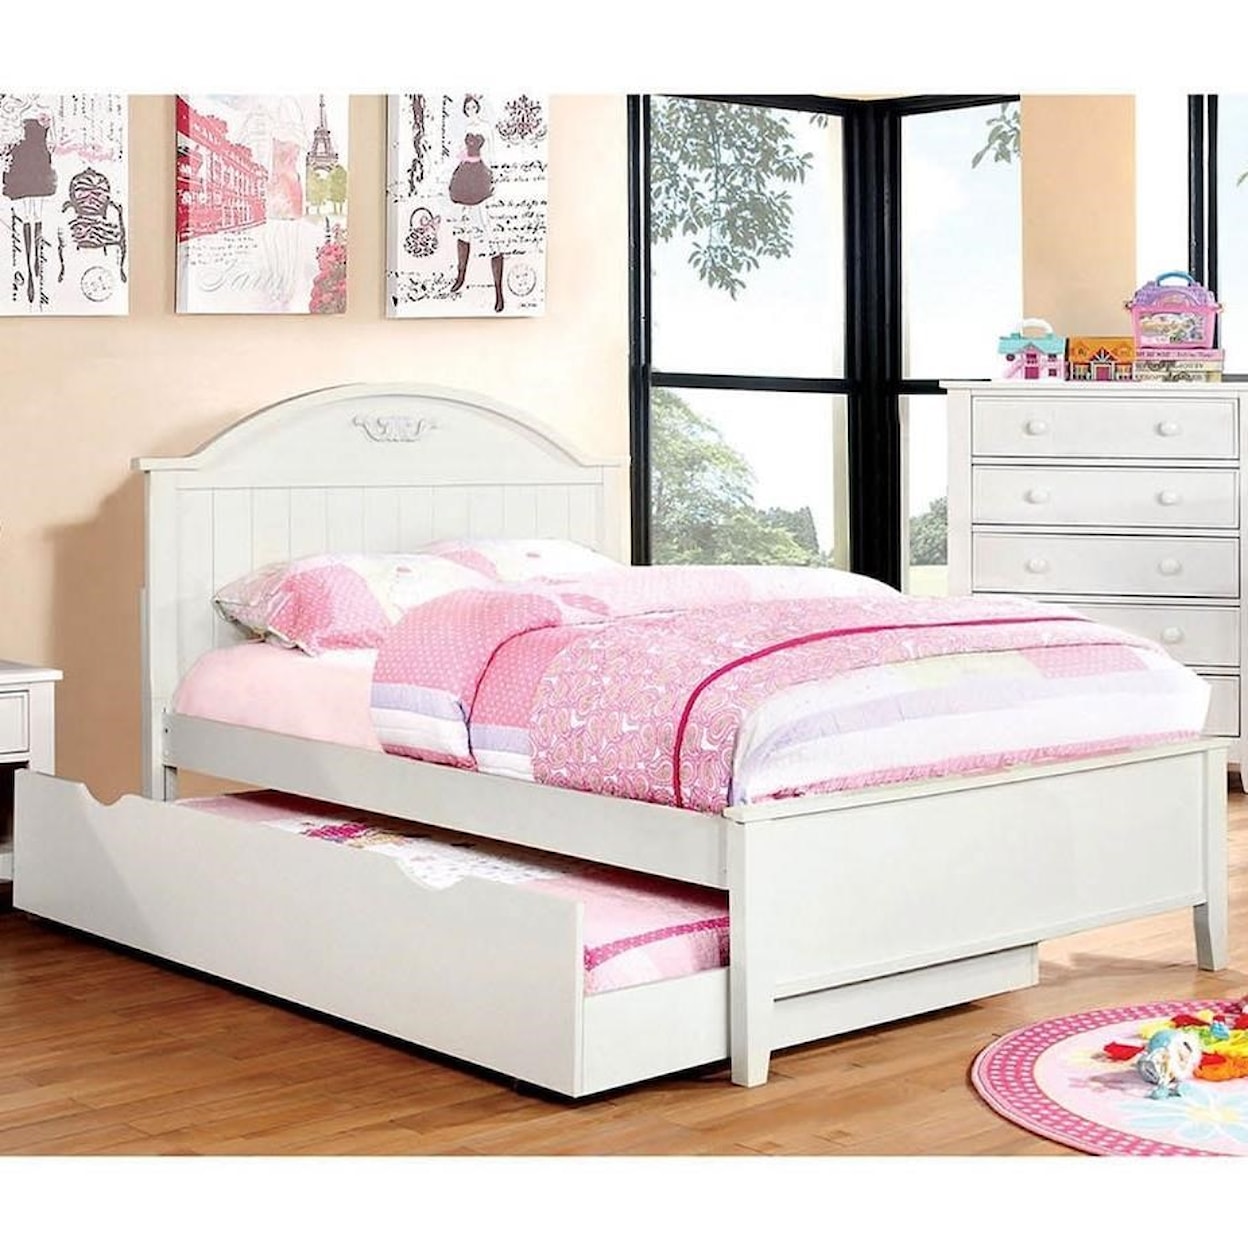 Furniture of America - FOA Medina Twin Bed